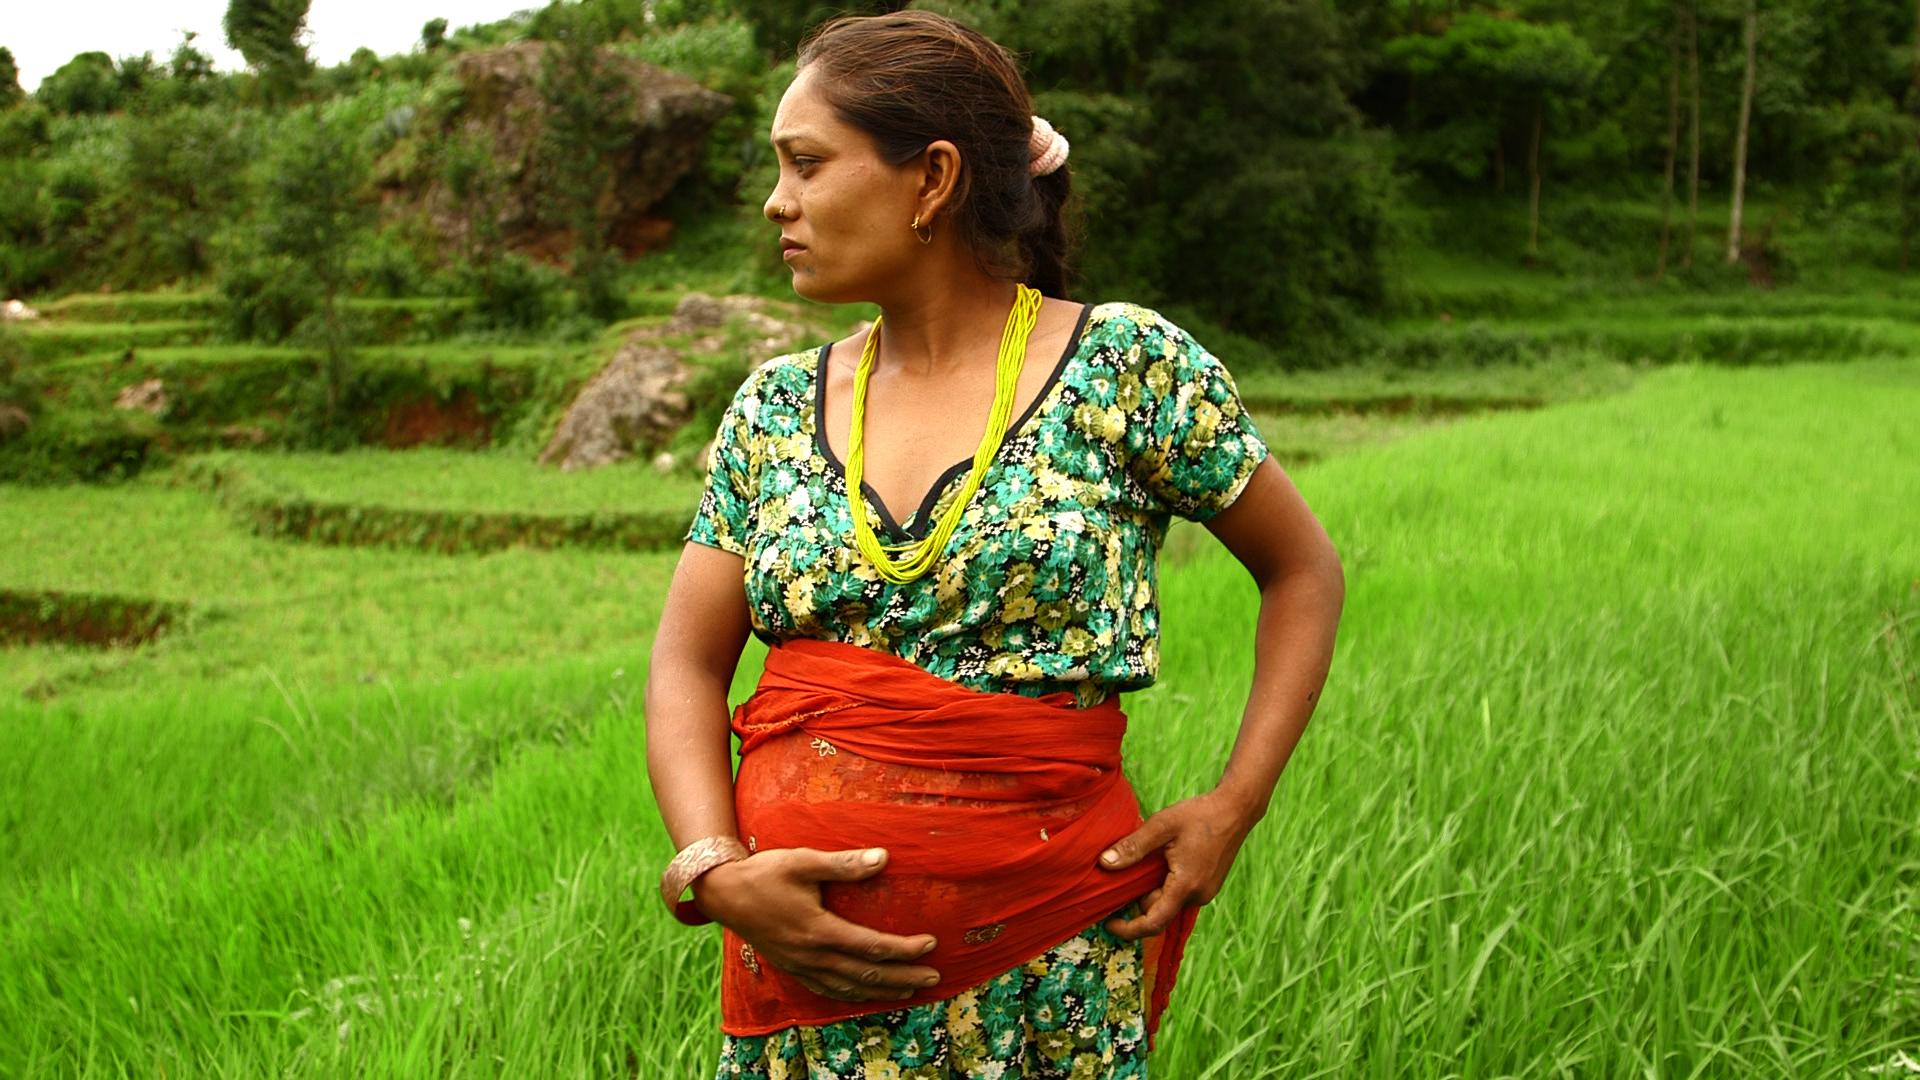 Januka Rasaeli, a pregnant woman in Nepal